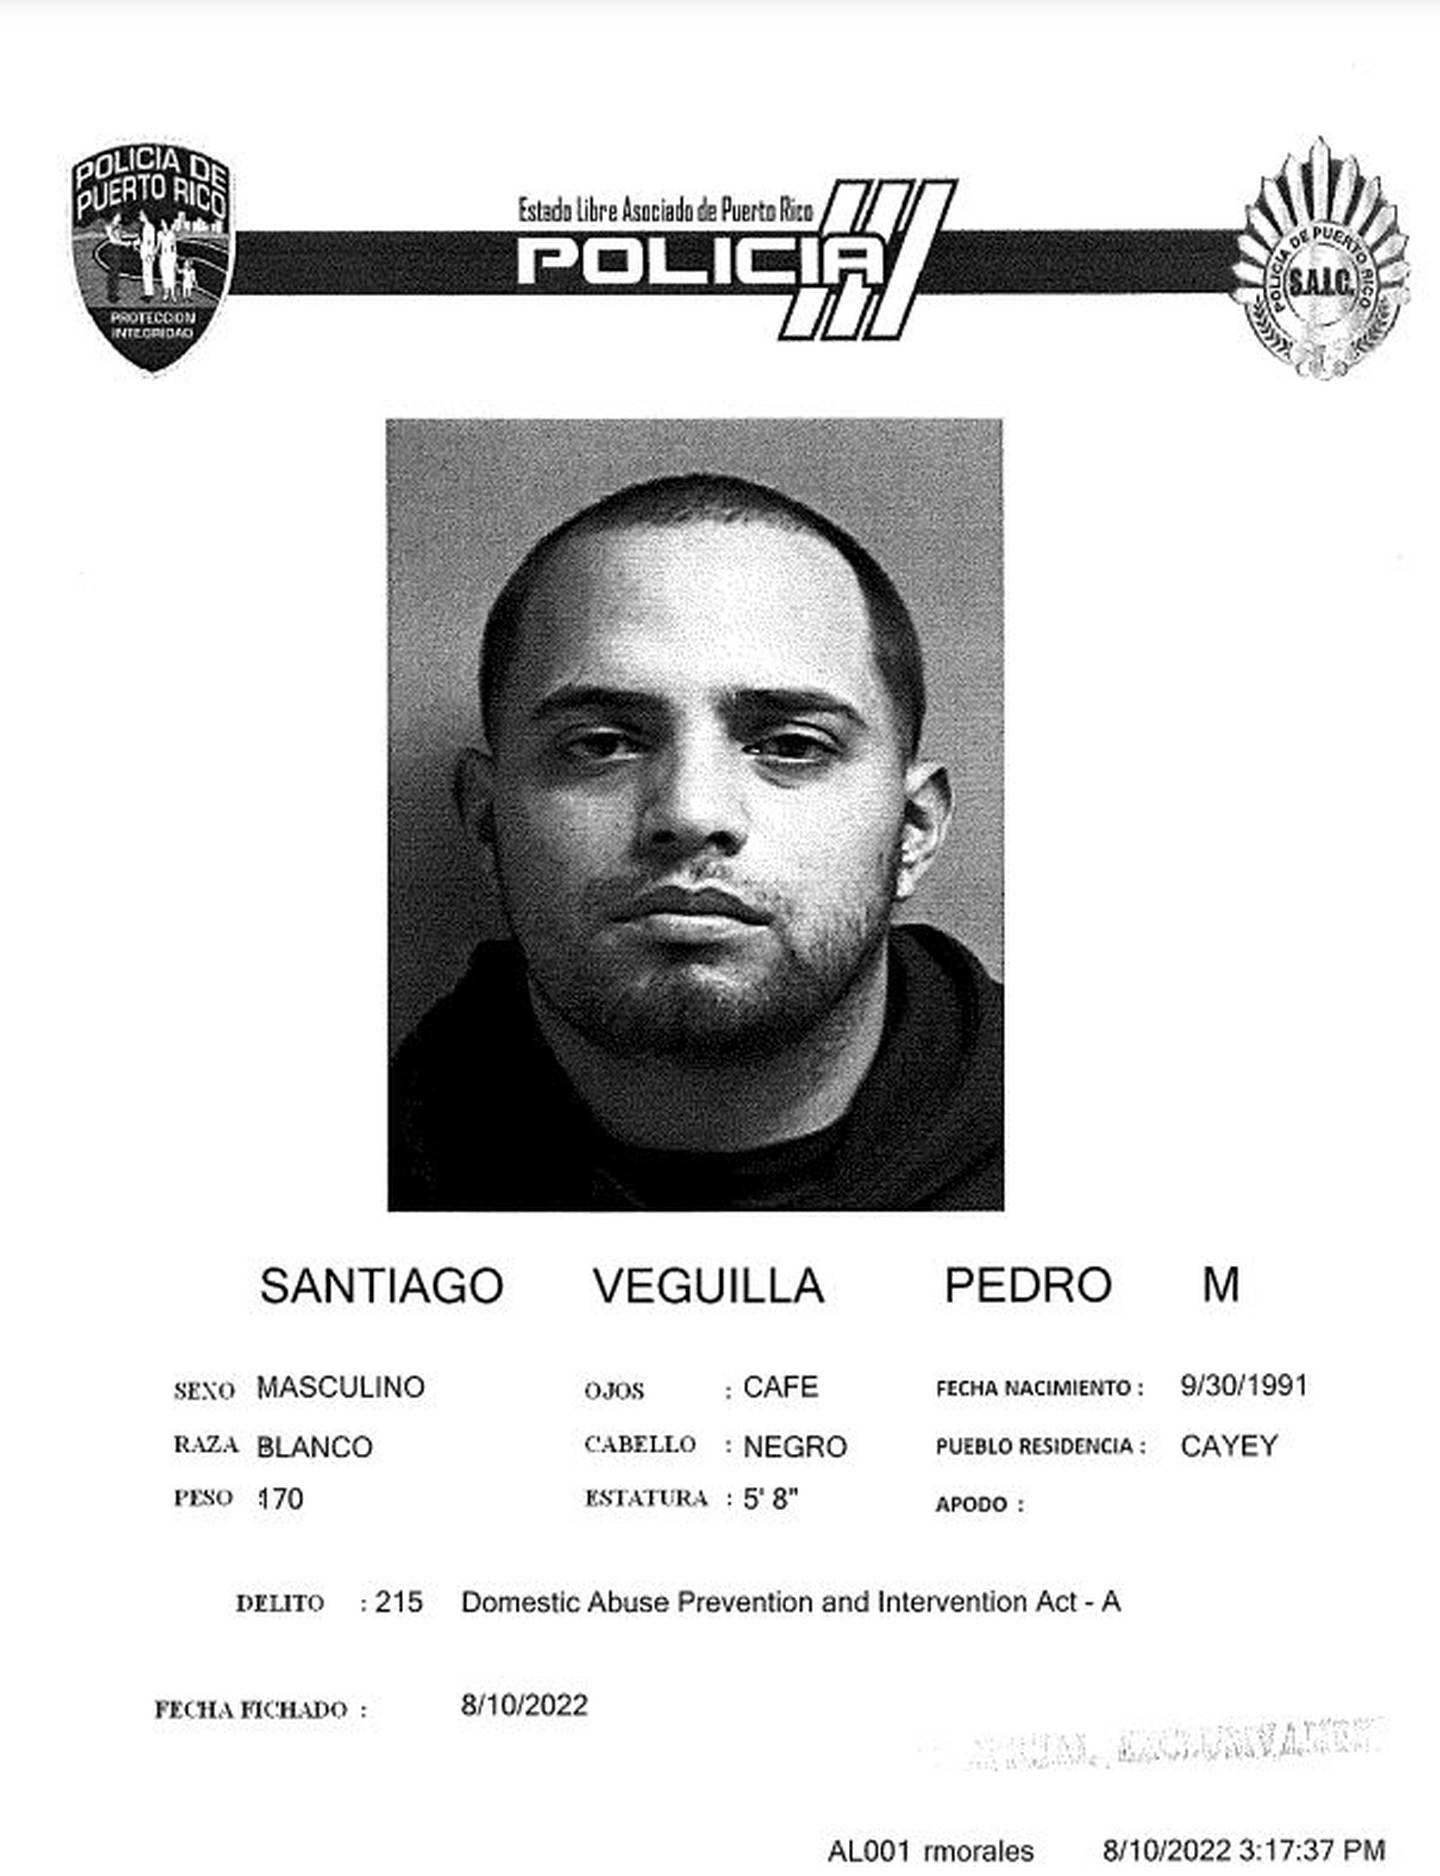 Pedro M. Santiago Veguilla (Suministrada por la Policía)